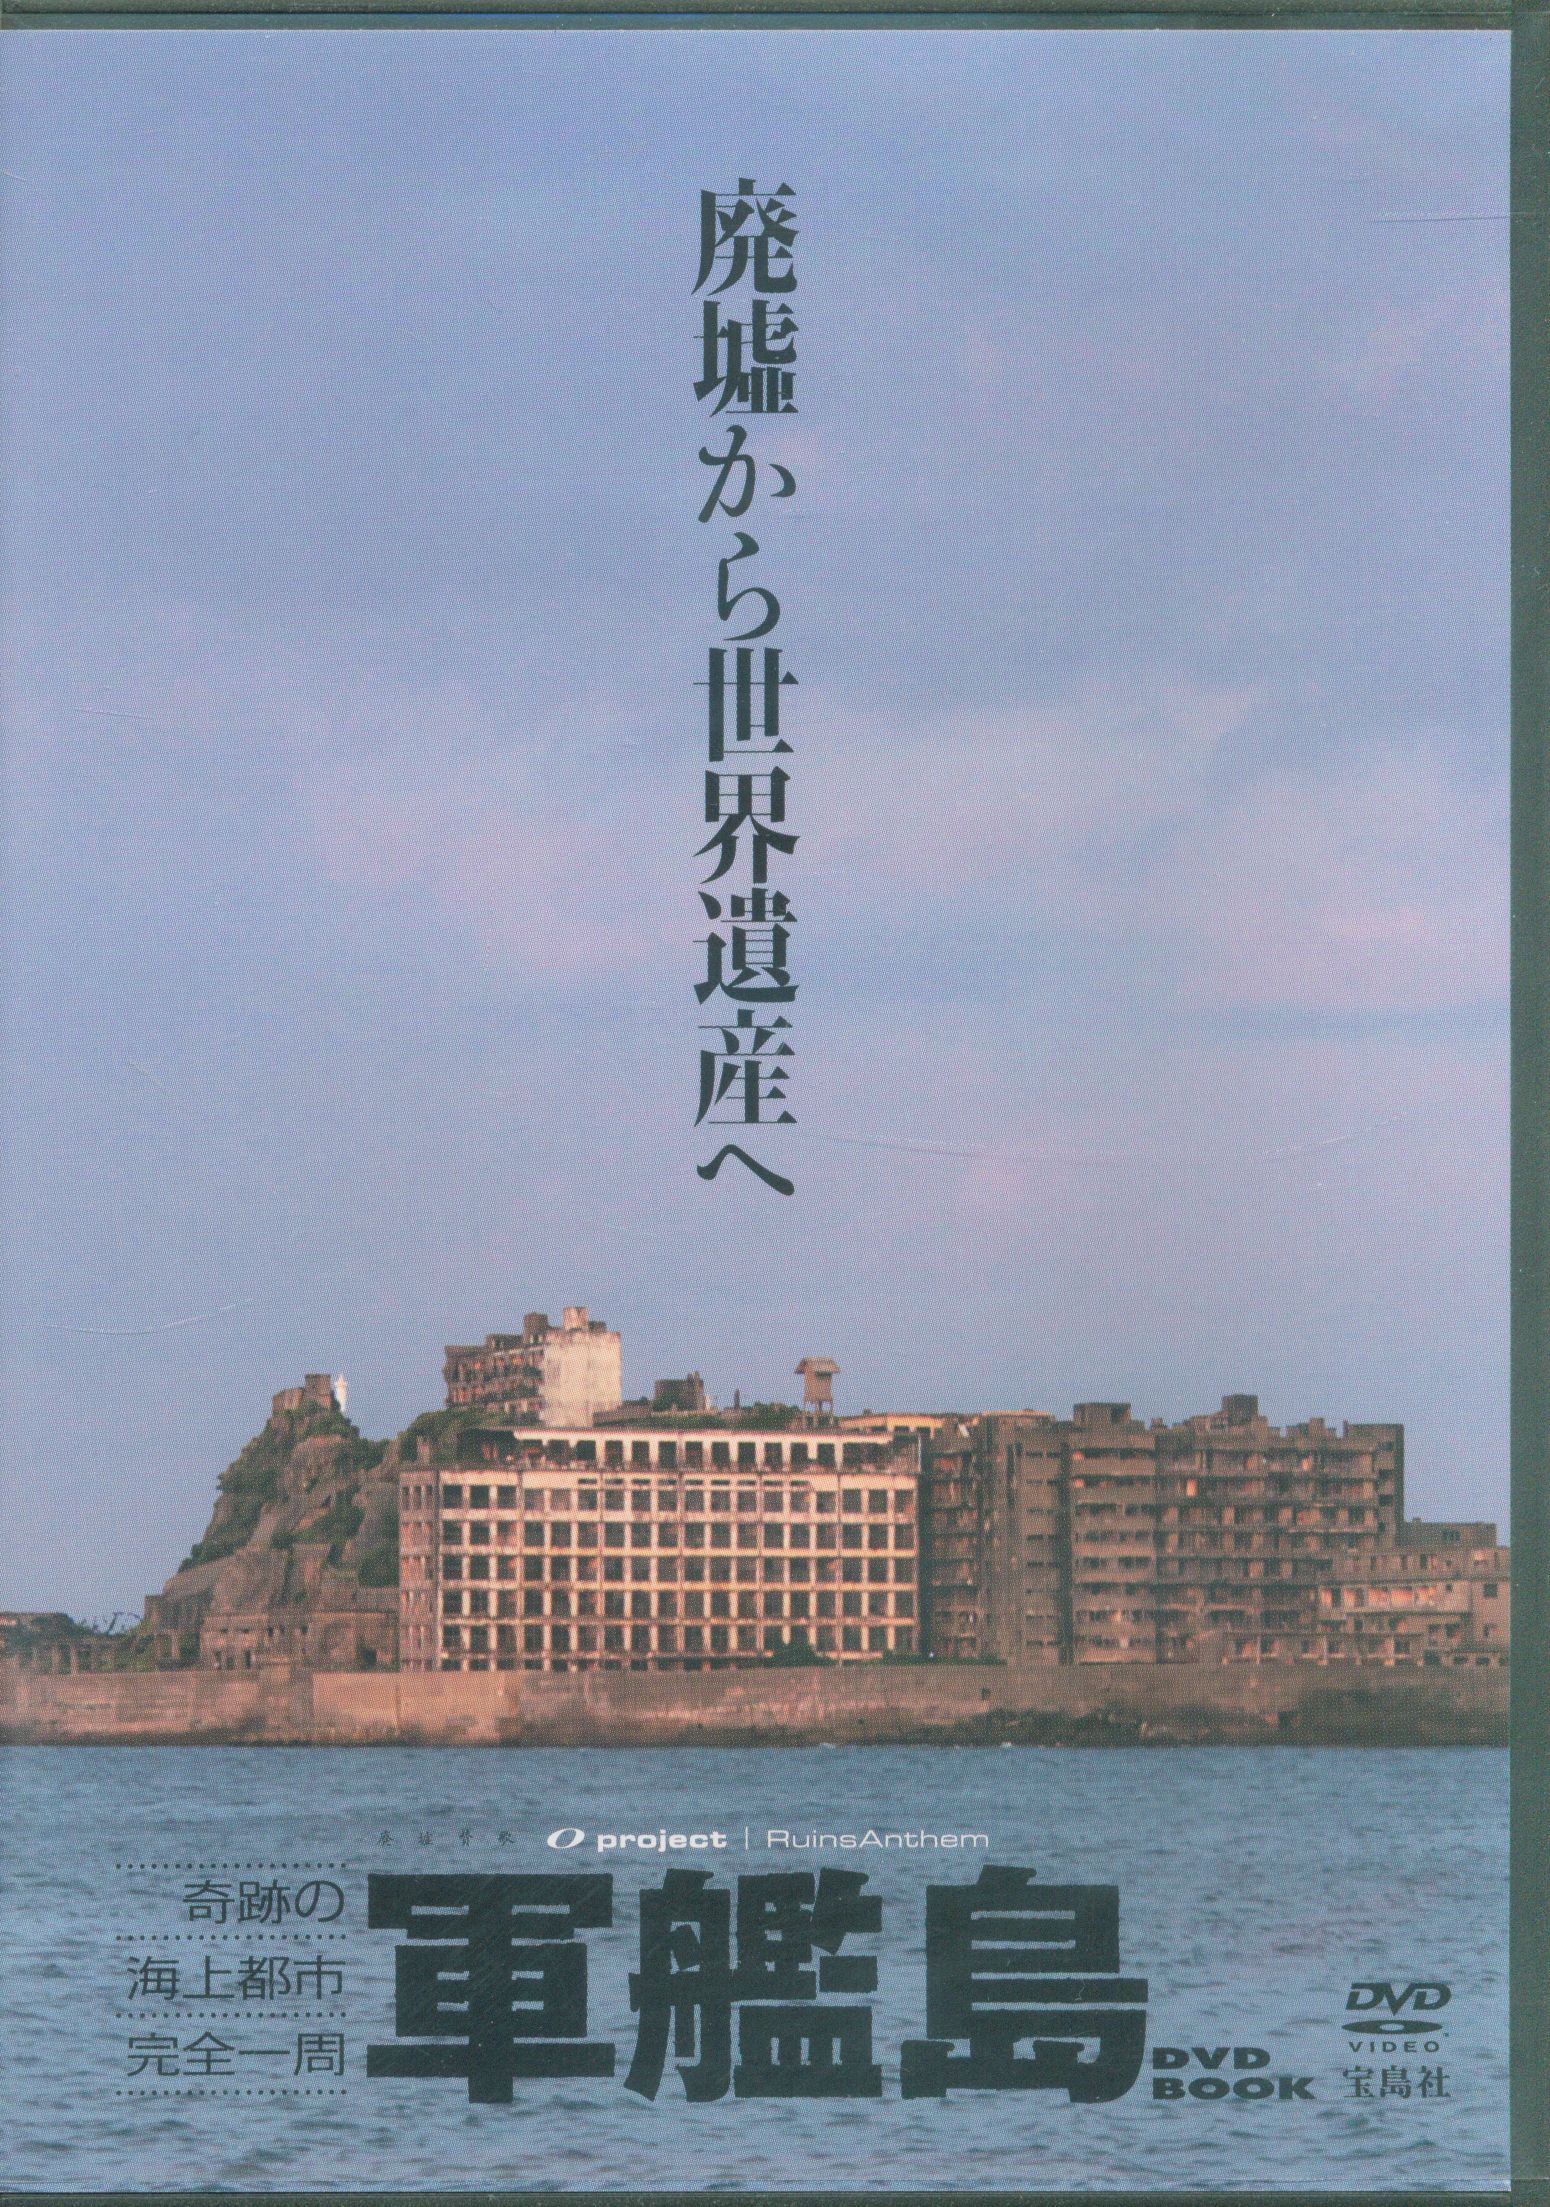 軍艦島HASHIMA DVD - ブルーレイ